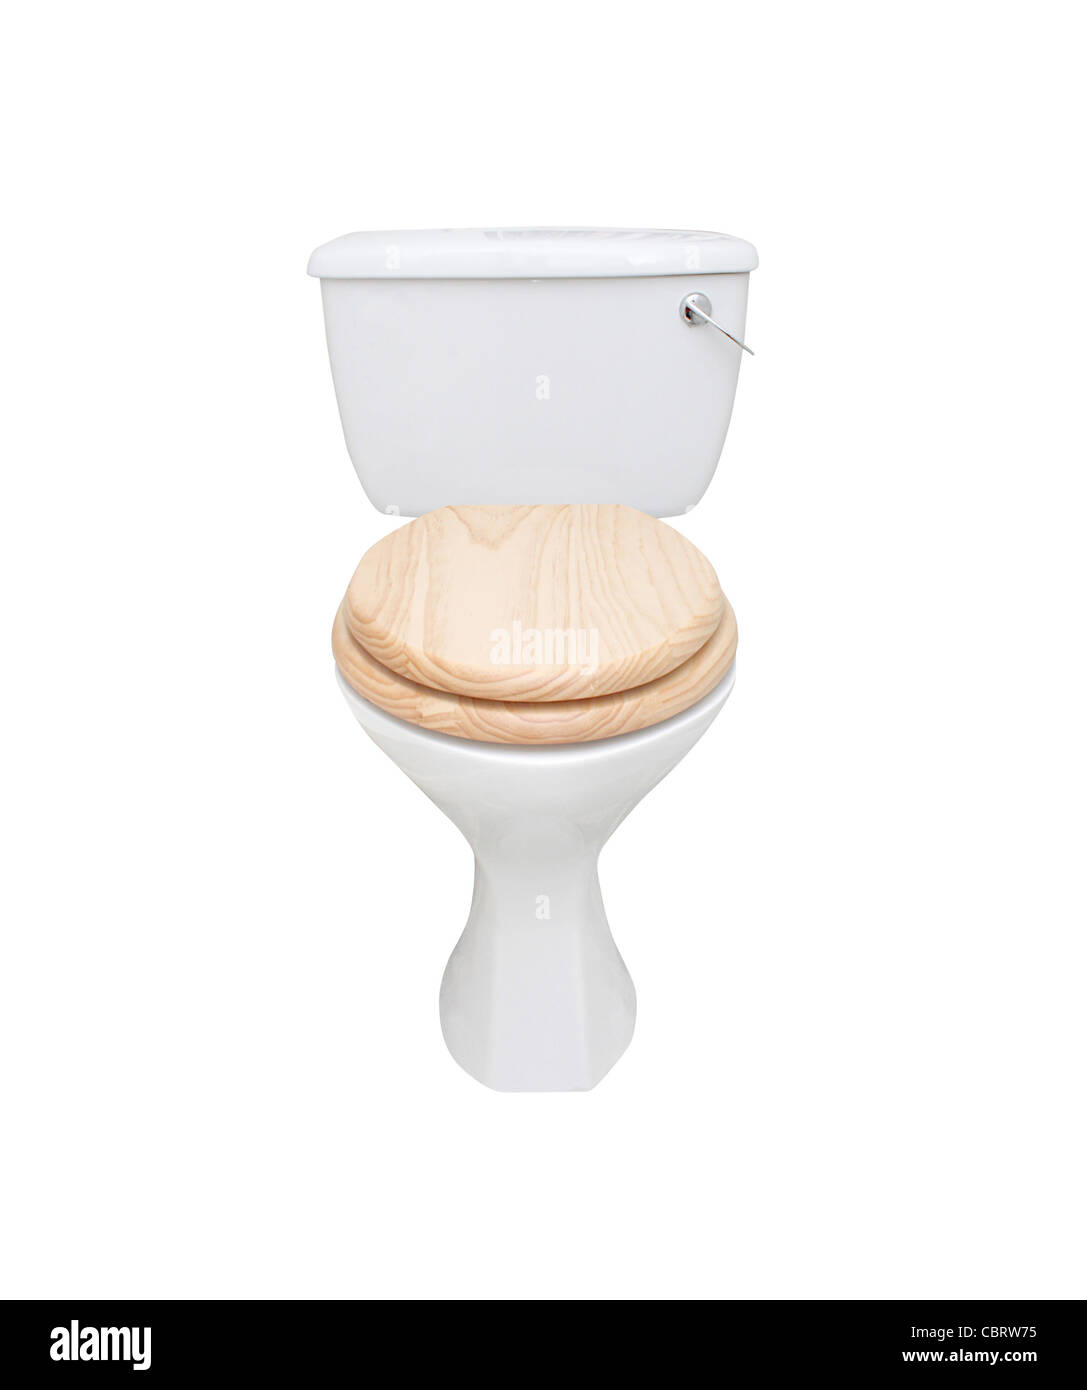 Toilet isolated on white Stock Photo